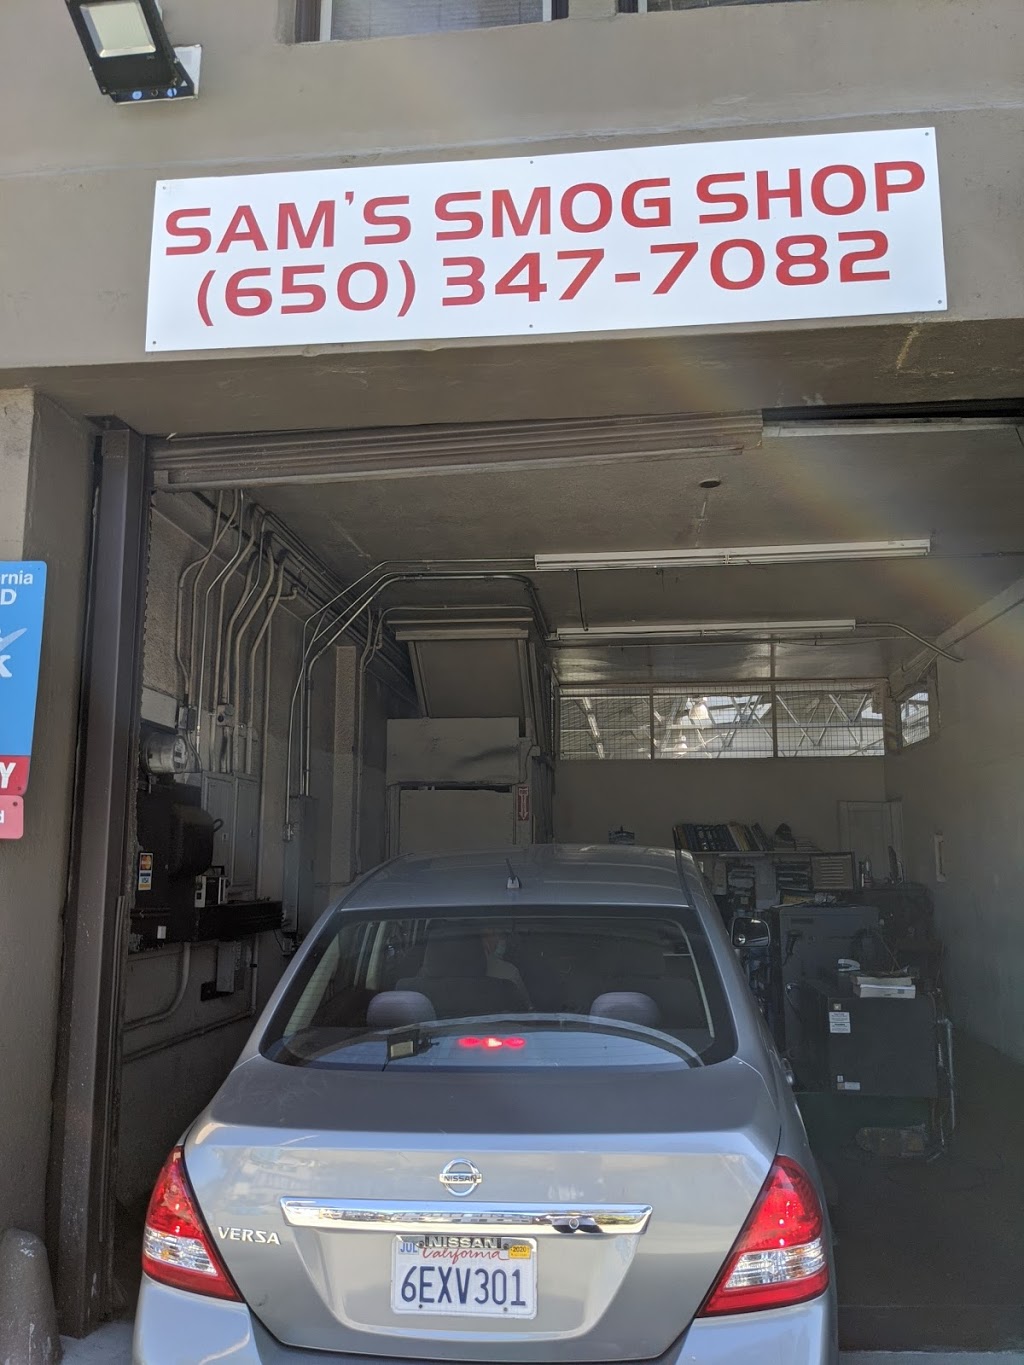 Sams Smog Shop | 1204 El Camino Real, Burlingame, CA 94010 | Phone: (650) 347-7082